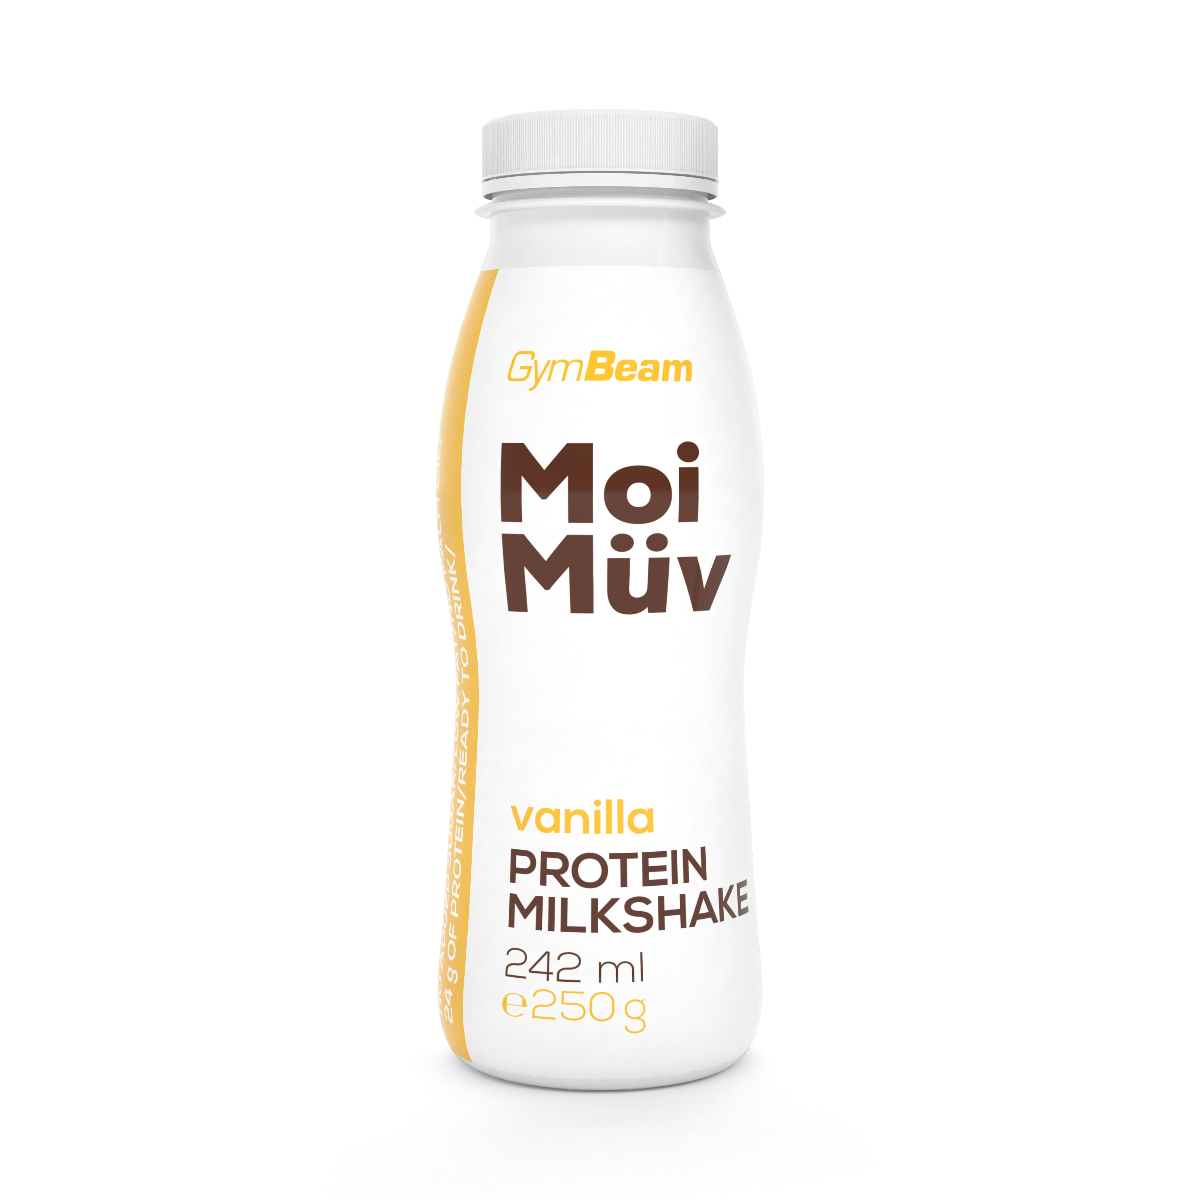 MoiMüv Protein Milkshake - GymBeam čokoláda